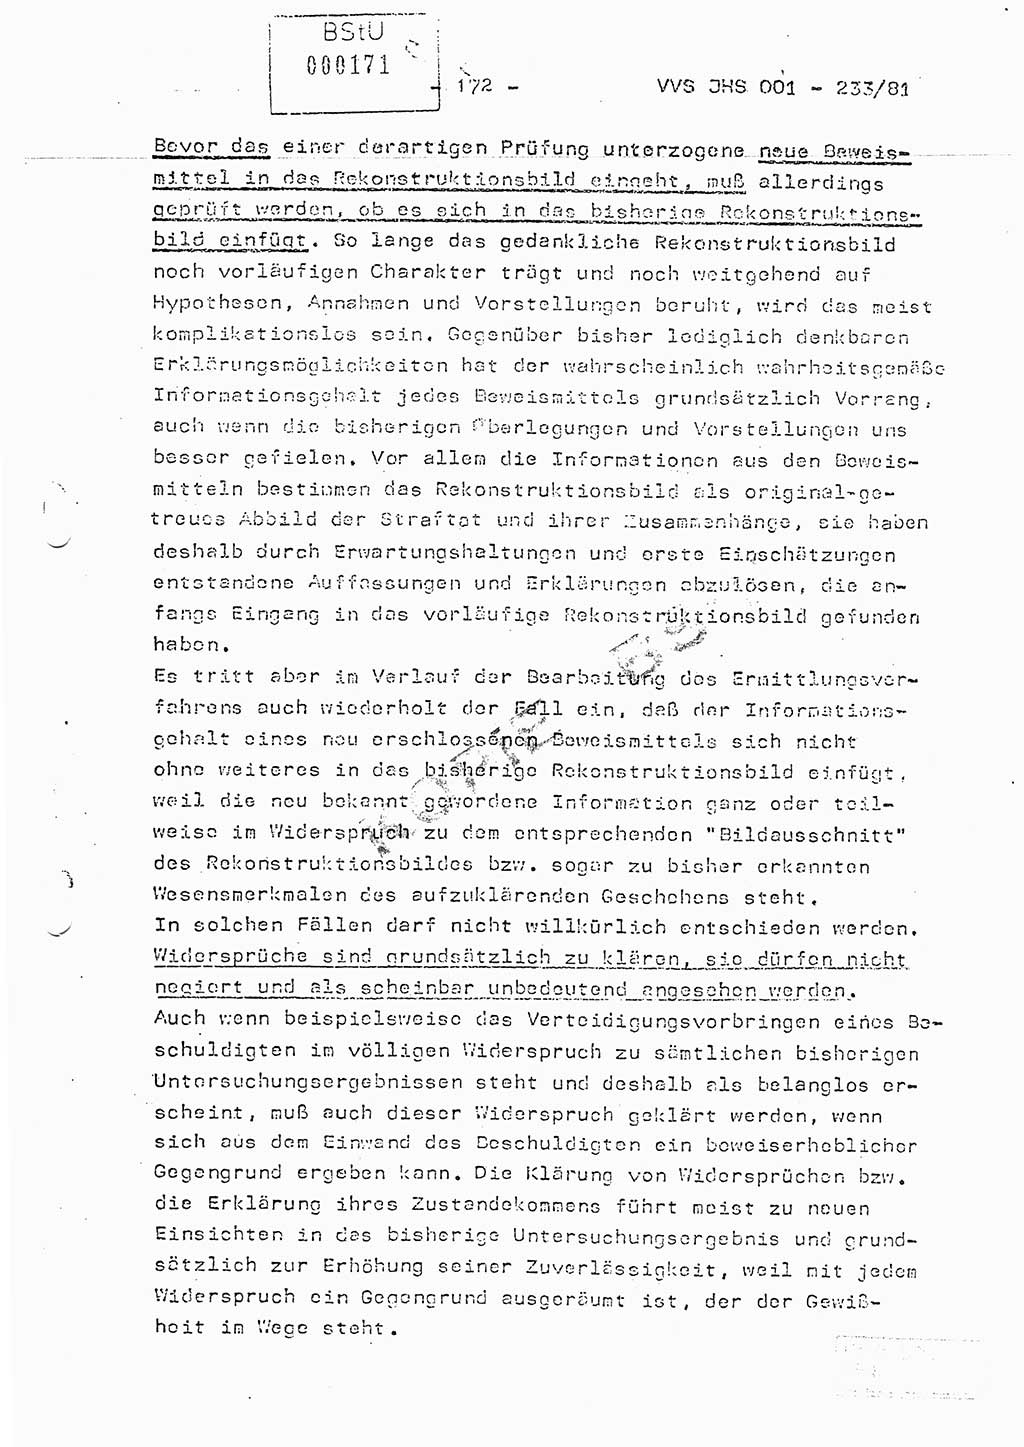 Dissertation Oberstleutnant Horst Zank (JHS), Oberstleutnant Dr. Karl-Heinz Knoblauch (JHS), Oberstleutnant Gustav-Adolf Kowalewski (HA Ⅸ), Oberstleutnant Wolfgang Plötner (HA Ⅸ), Ministerium für Staatssicherheit (MfS) [Deutsche Demokratische Republik (DDR)], Juristische Hochschule (JHS), Vertrauliche Verschlußsache (VVS) o001-233/81, Potsdam 1981, Blatt 172 (Diss. MfS DDR JHS VVS o001-233/81 1981, Bl. 172)